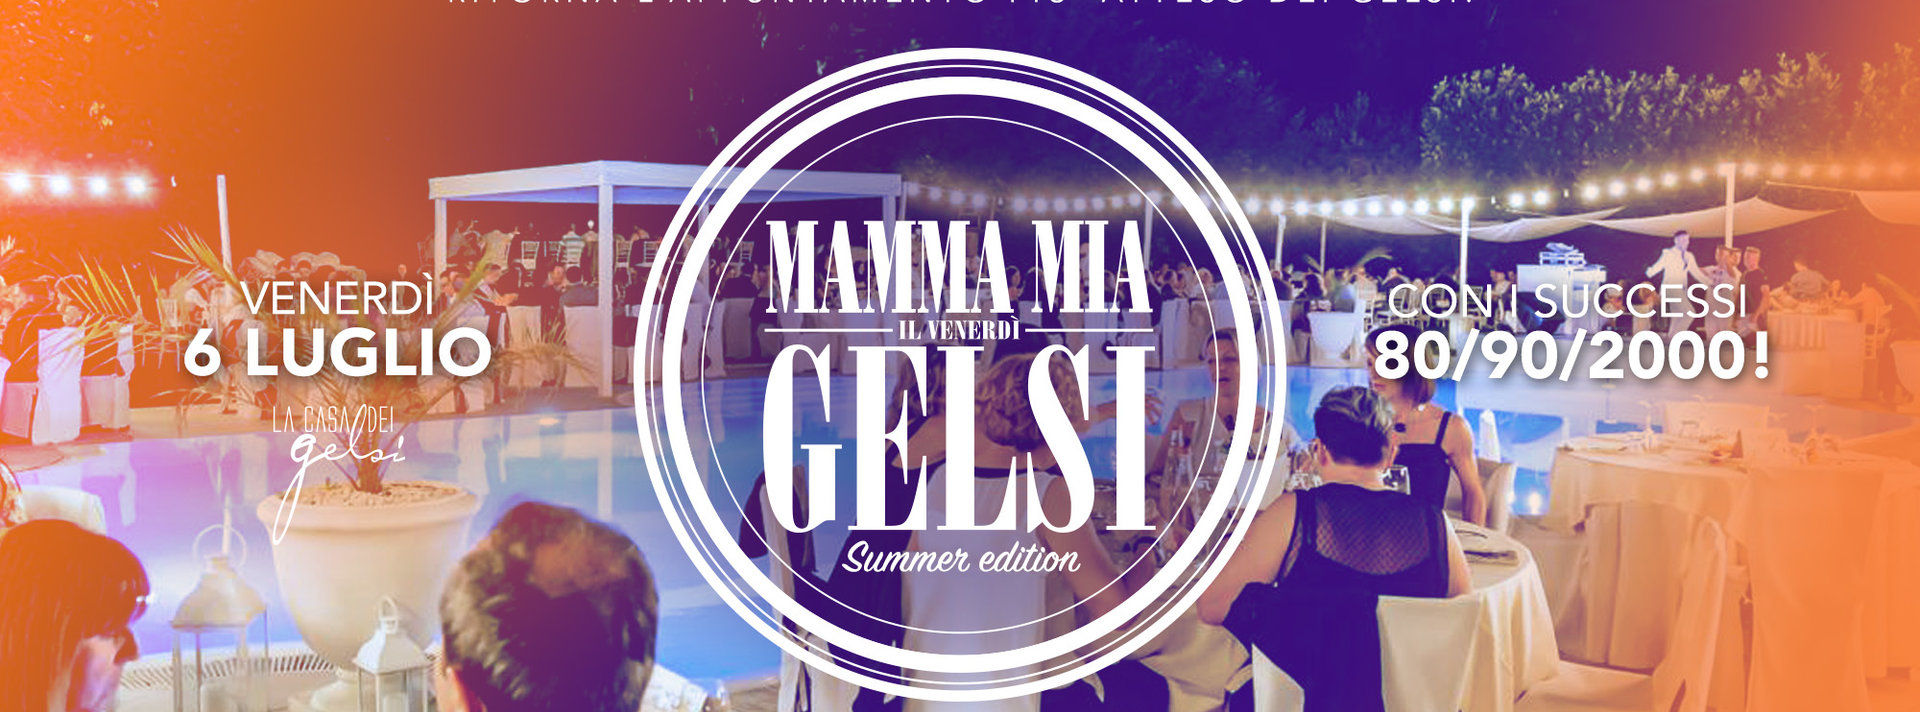 Mammamia Gelsi 6 luglio 2018